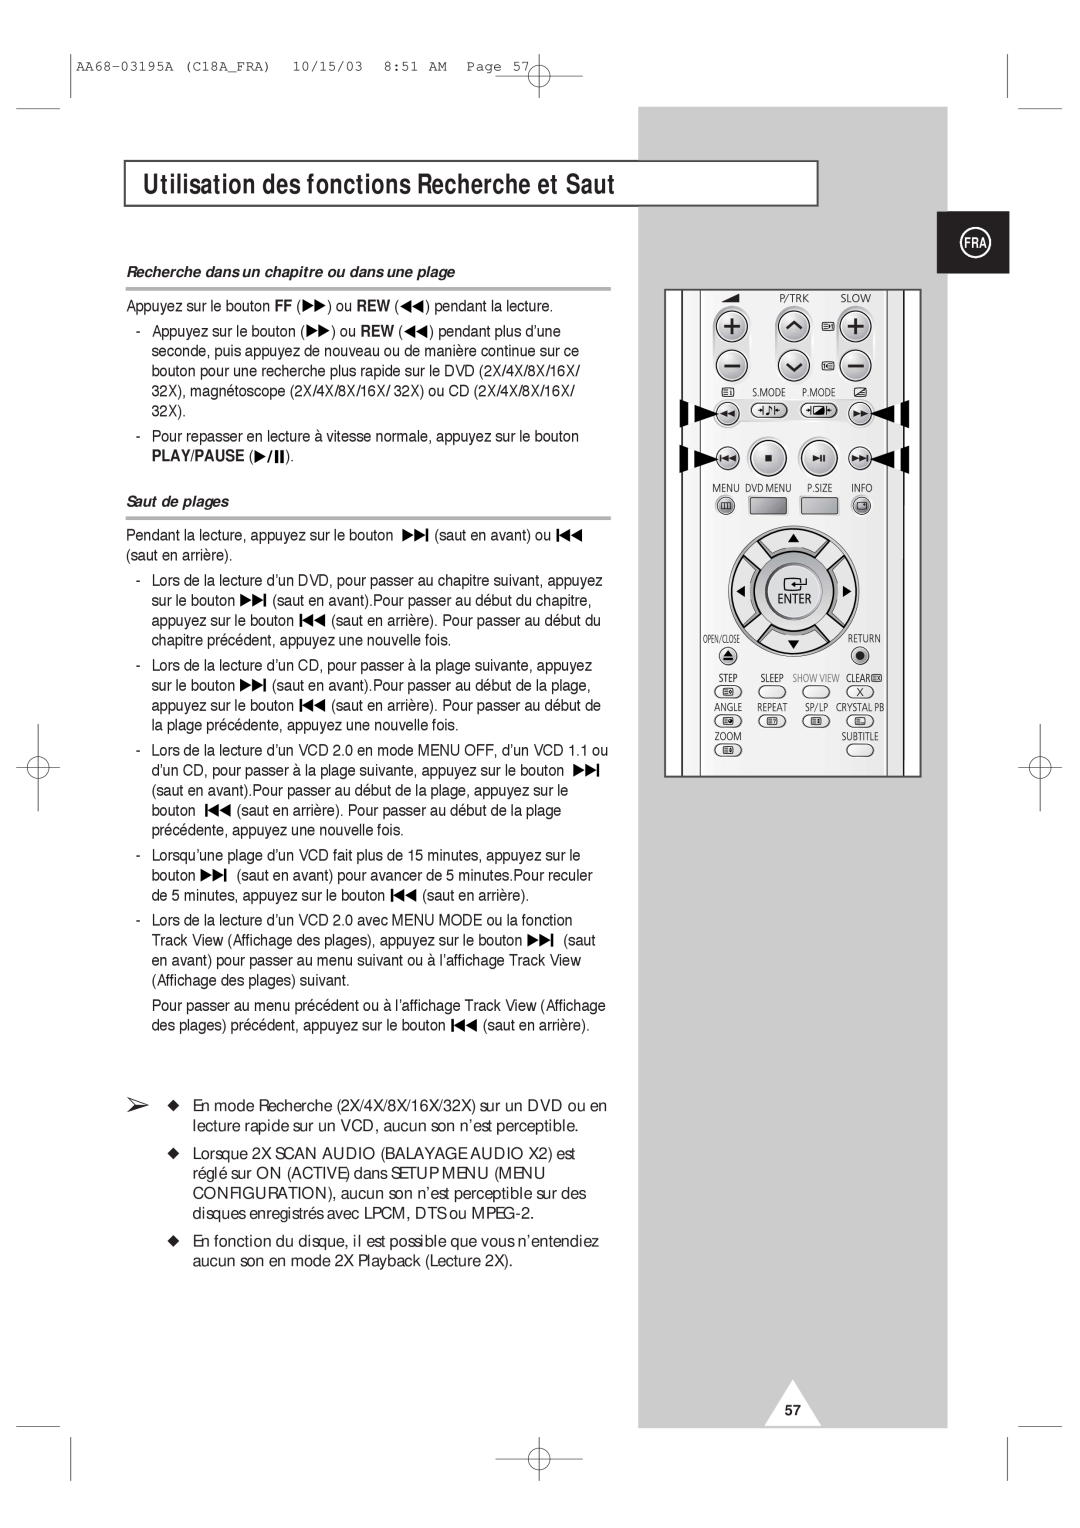 Samsung UW17J11VD5XXEF manual Utilisation des fonctions Recherche et Saut, Recherche dans un chapitre ou dans une plage 